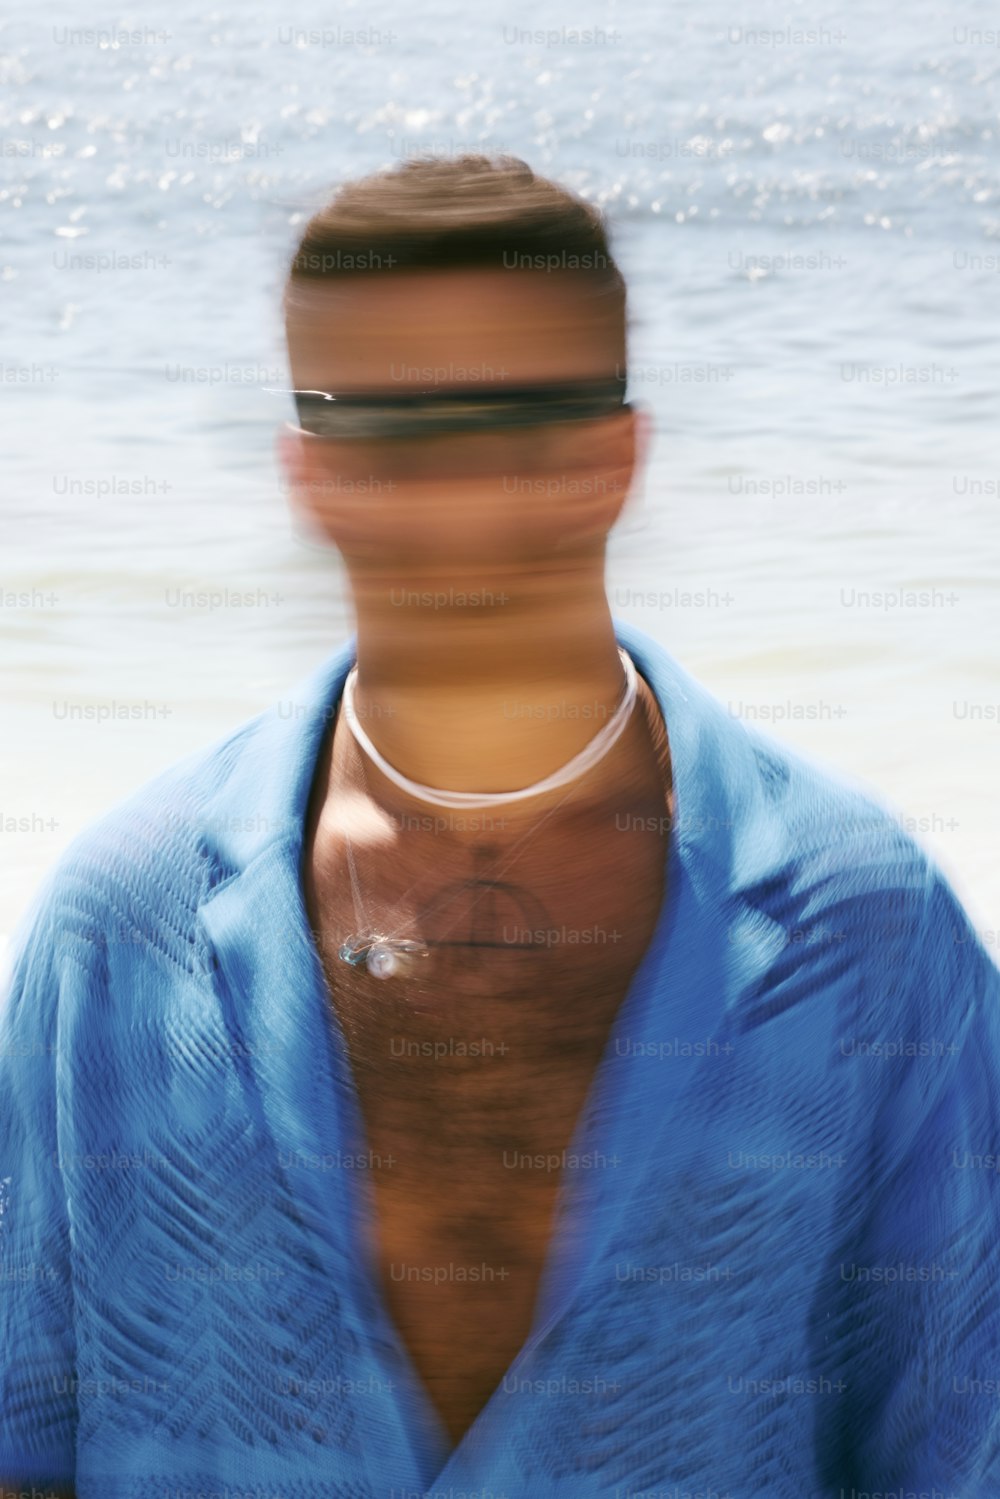 a blurry photo of a man wearing a blue shirt